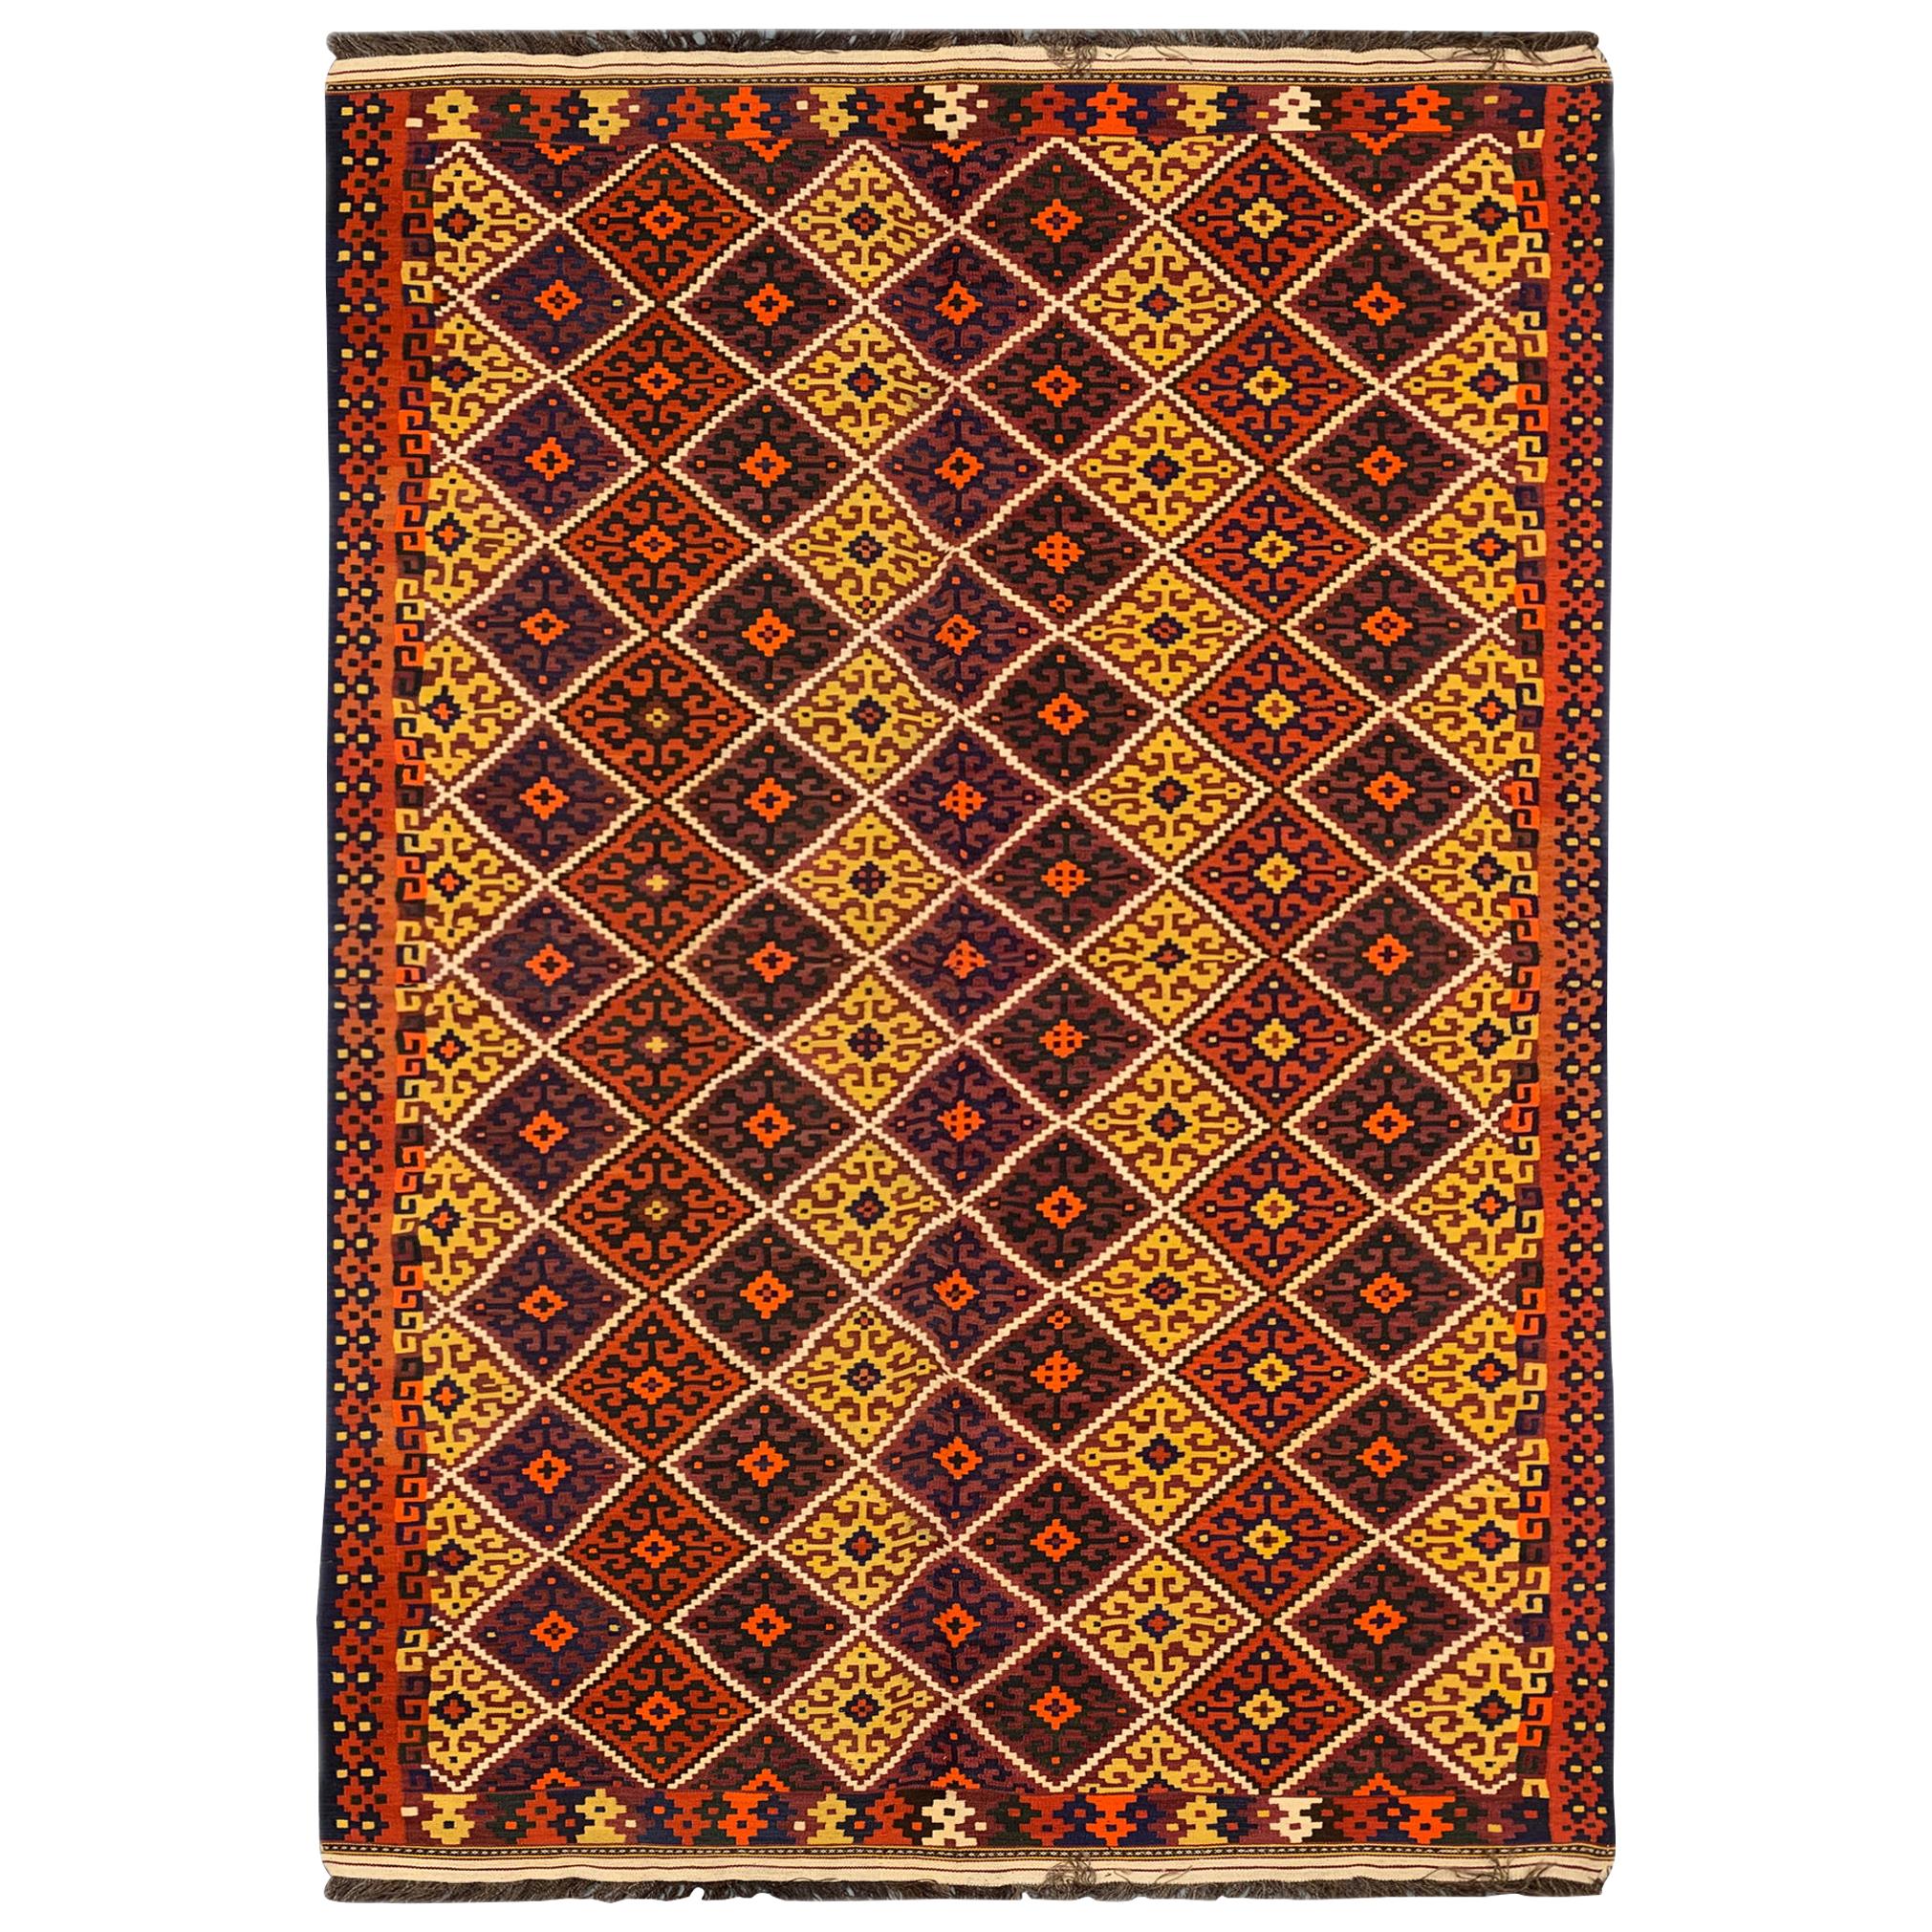 Seltener antiker kaukasischer Kelim-Teppich